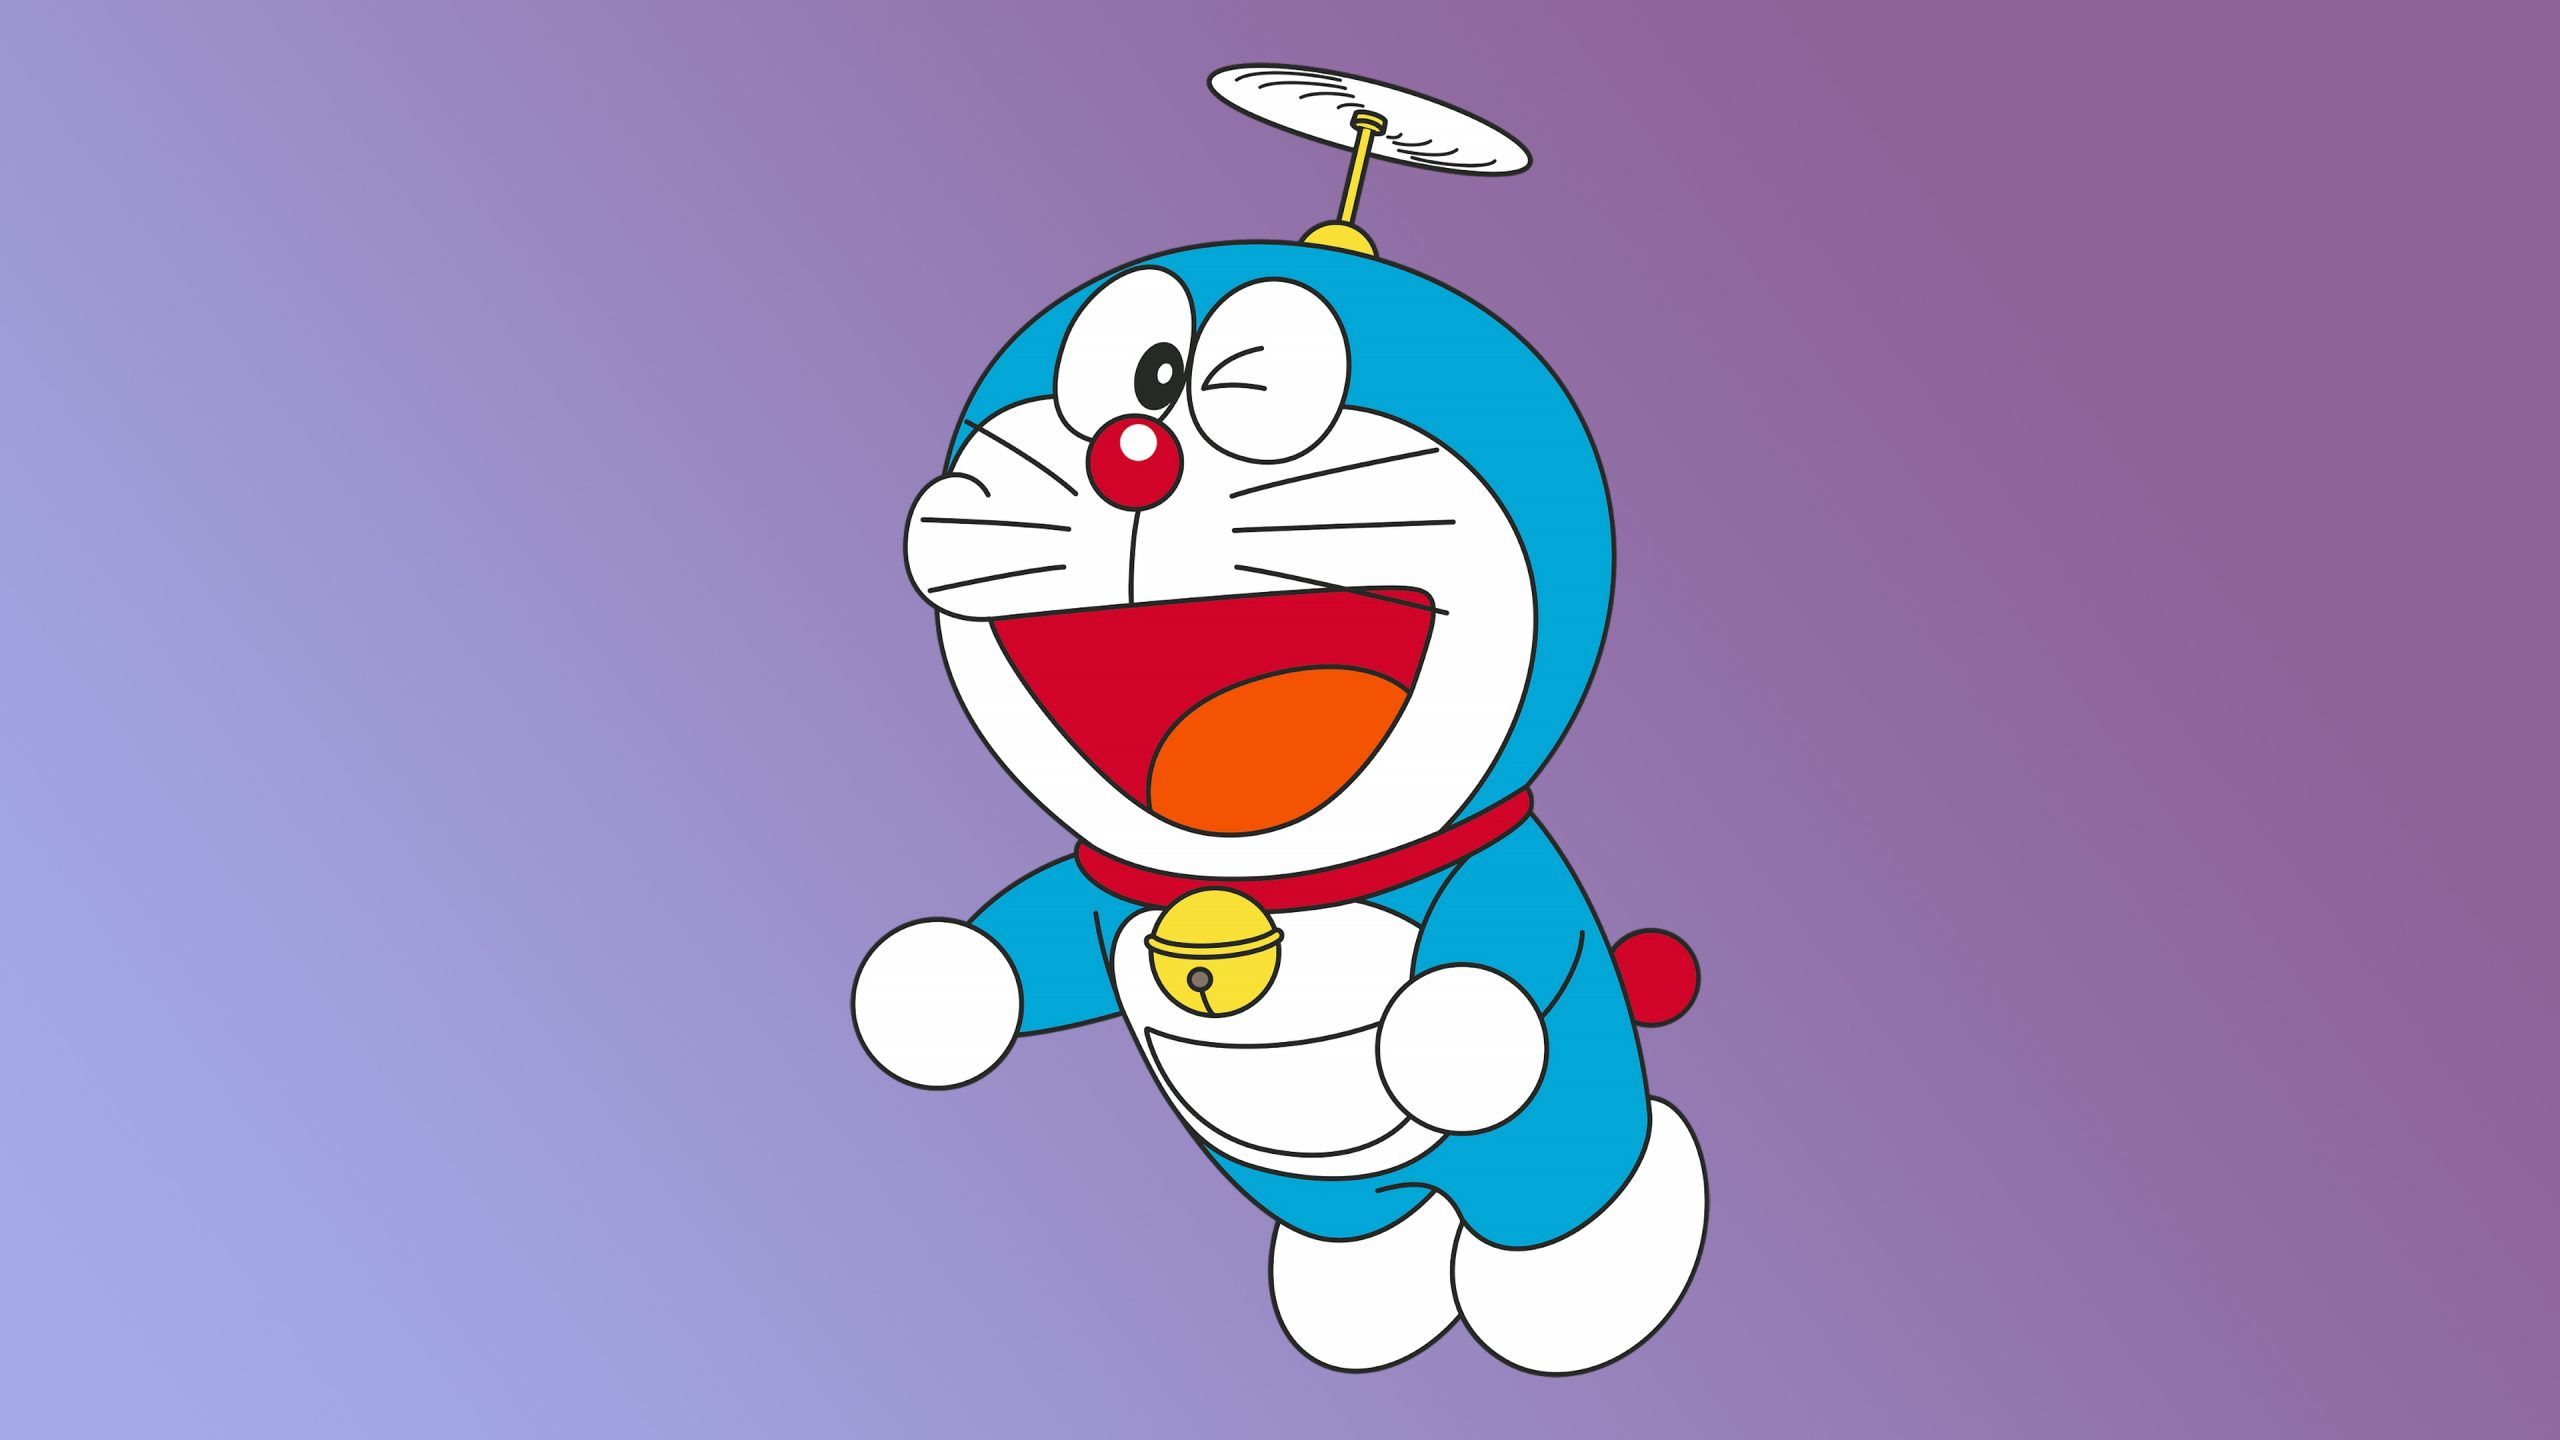 Doraemon Minimal 4k Wallpaper HD Cartoon 4k Wallpaper inside The Most Doraemon 4k Wallpaper. Cartoon wallpaper hd, Cartoon wallpaper, Doraemon wallpaper